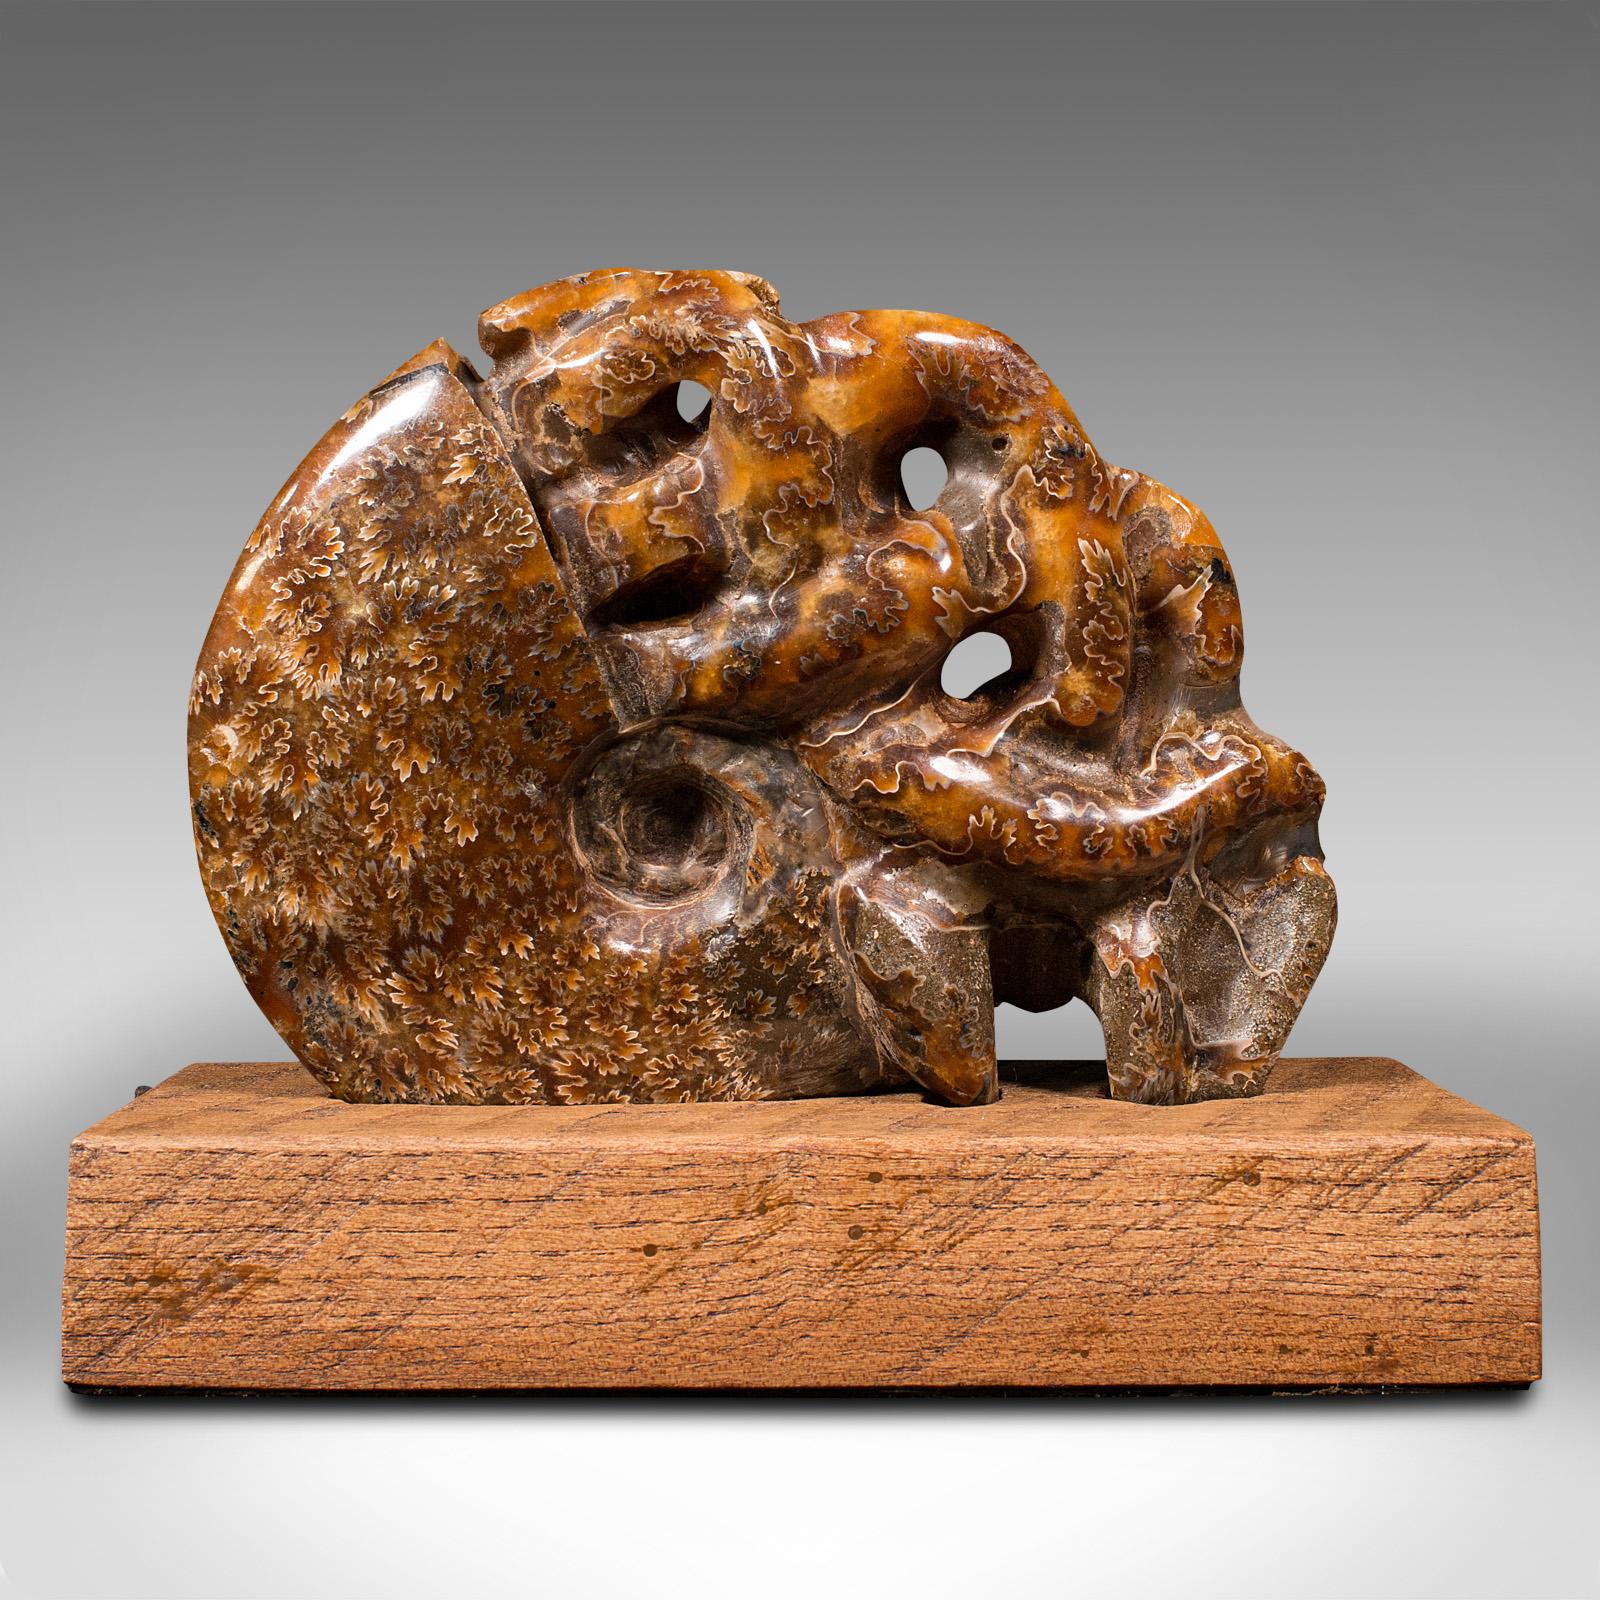 Dies ist ein Vintage geschnitzt dekorative Ammonit. Ein afrikanisches, opalisiertes Fossil auf einem Ausstellungssockel, datiert auf die Kreidezeit vor Millionen von Jahren, poliert und präsentiert um 1970. 

Gekonnt geschnitzter Ammonit mit